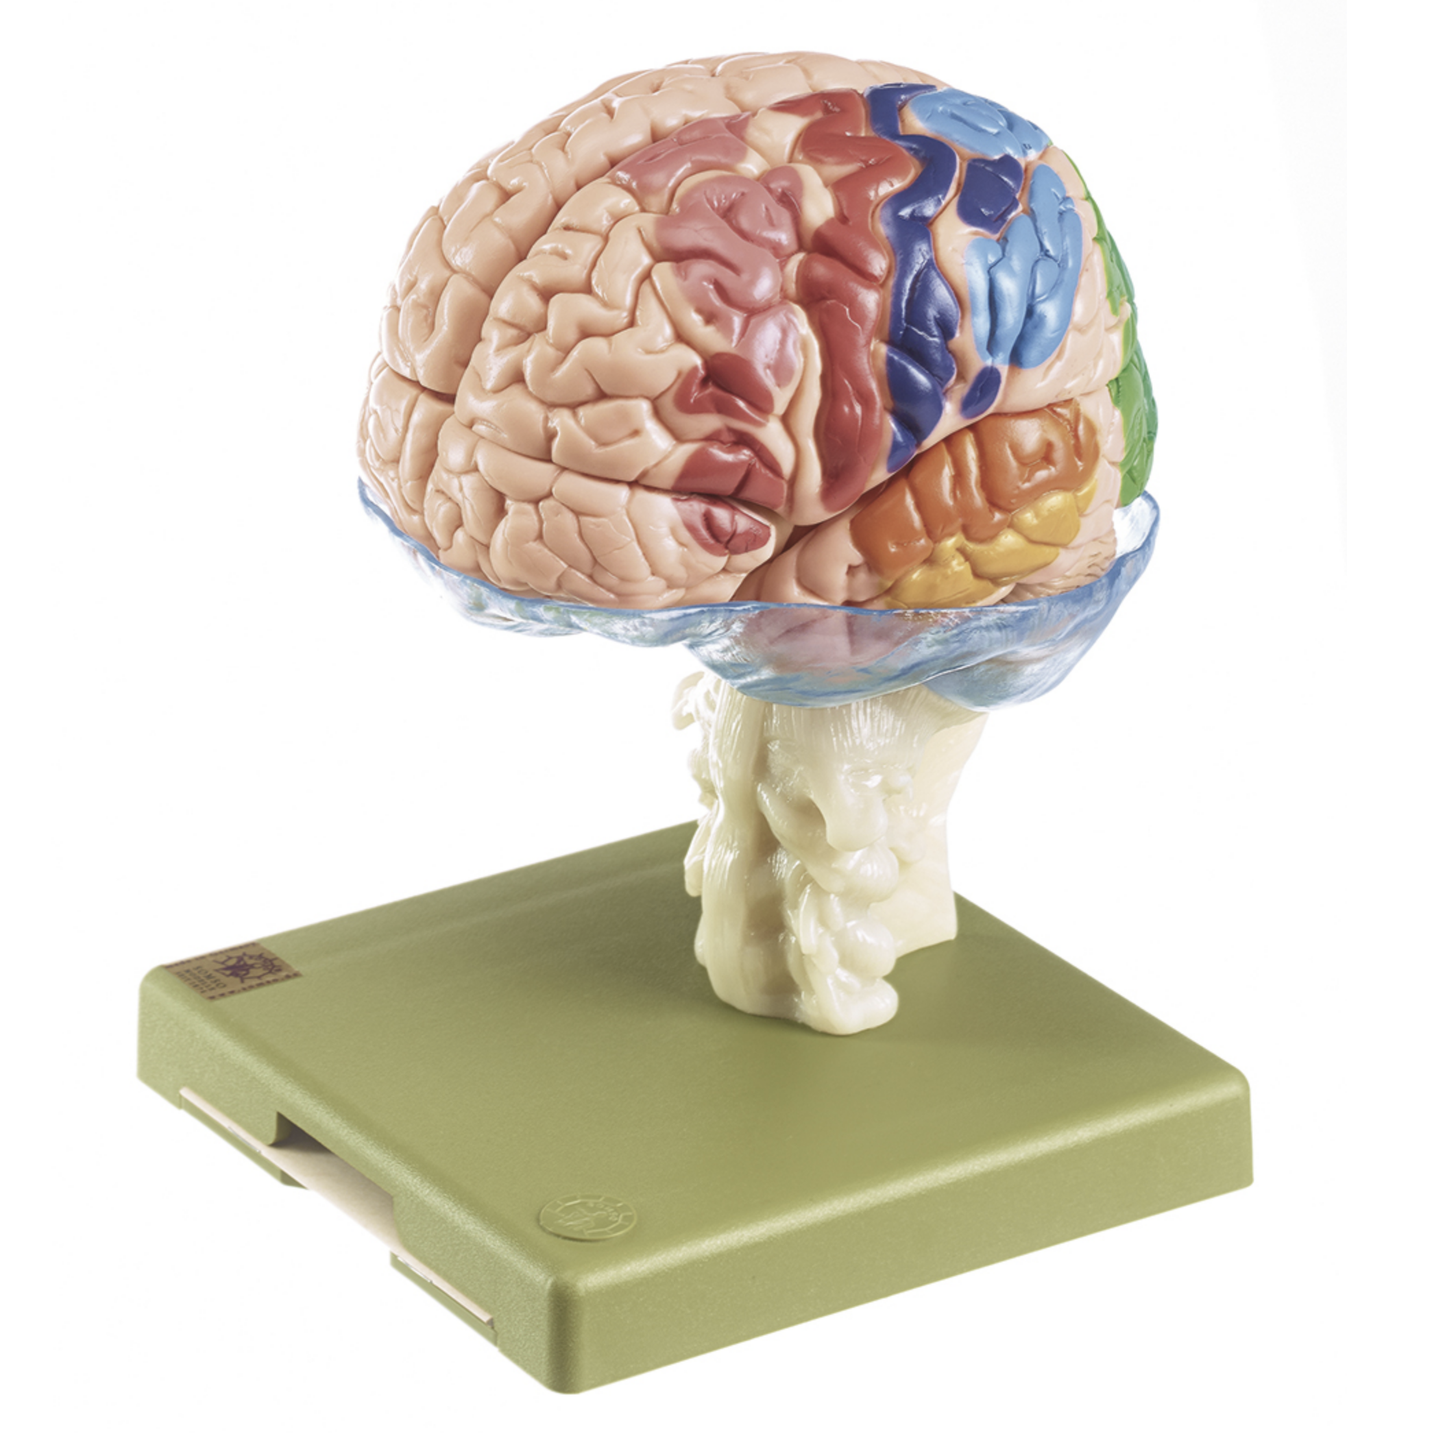 Hjernemodel i højeste kvalitet og mange områder i pædagogiske farver. Kan adskilles i 15 dele